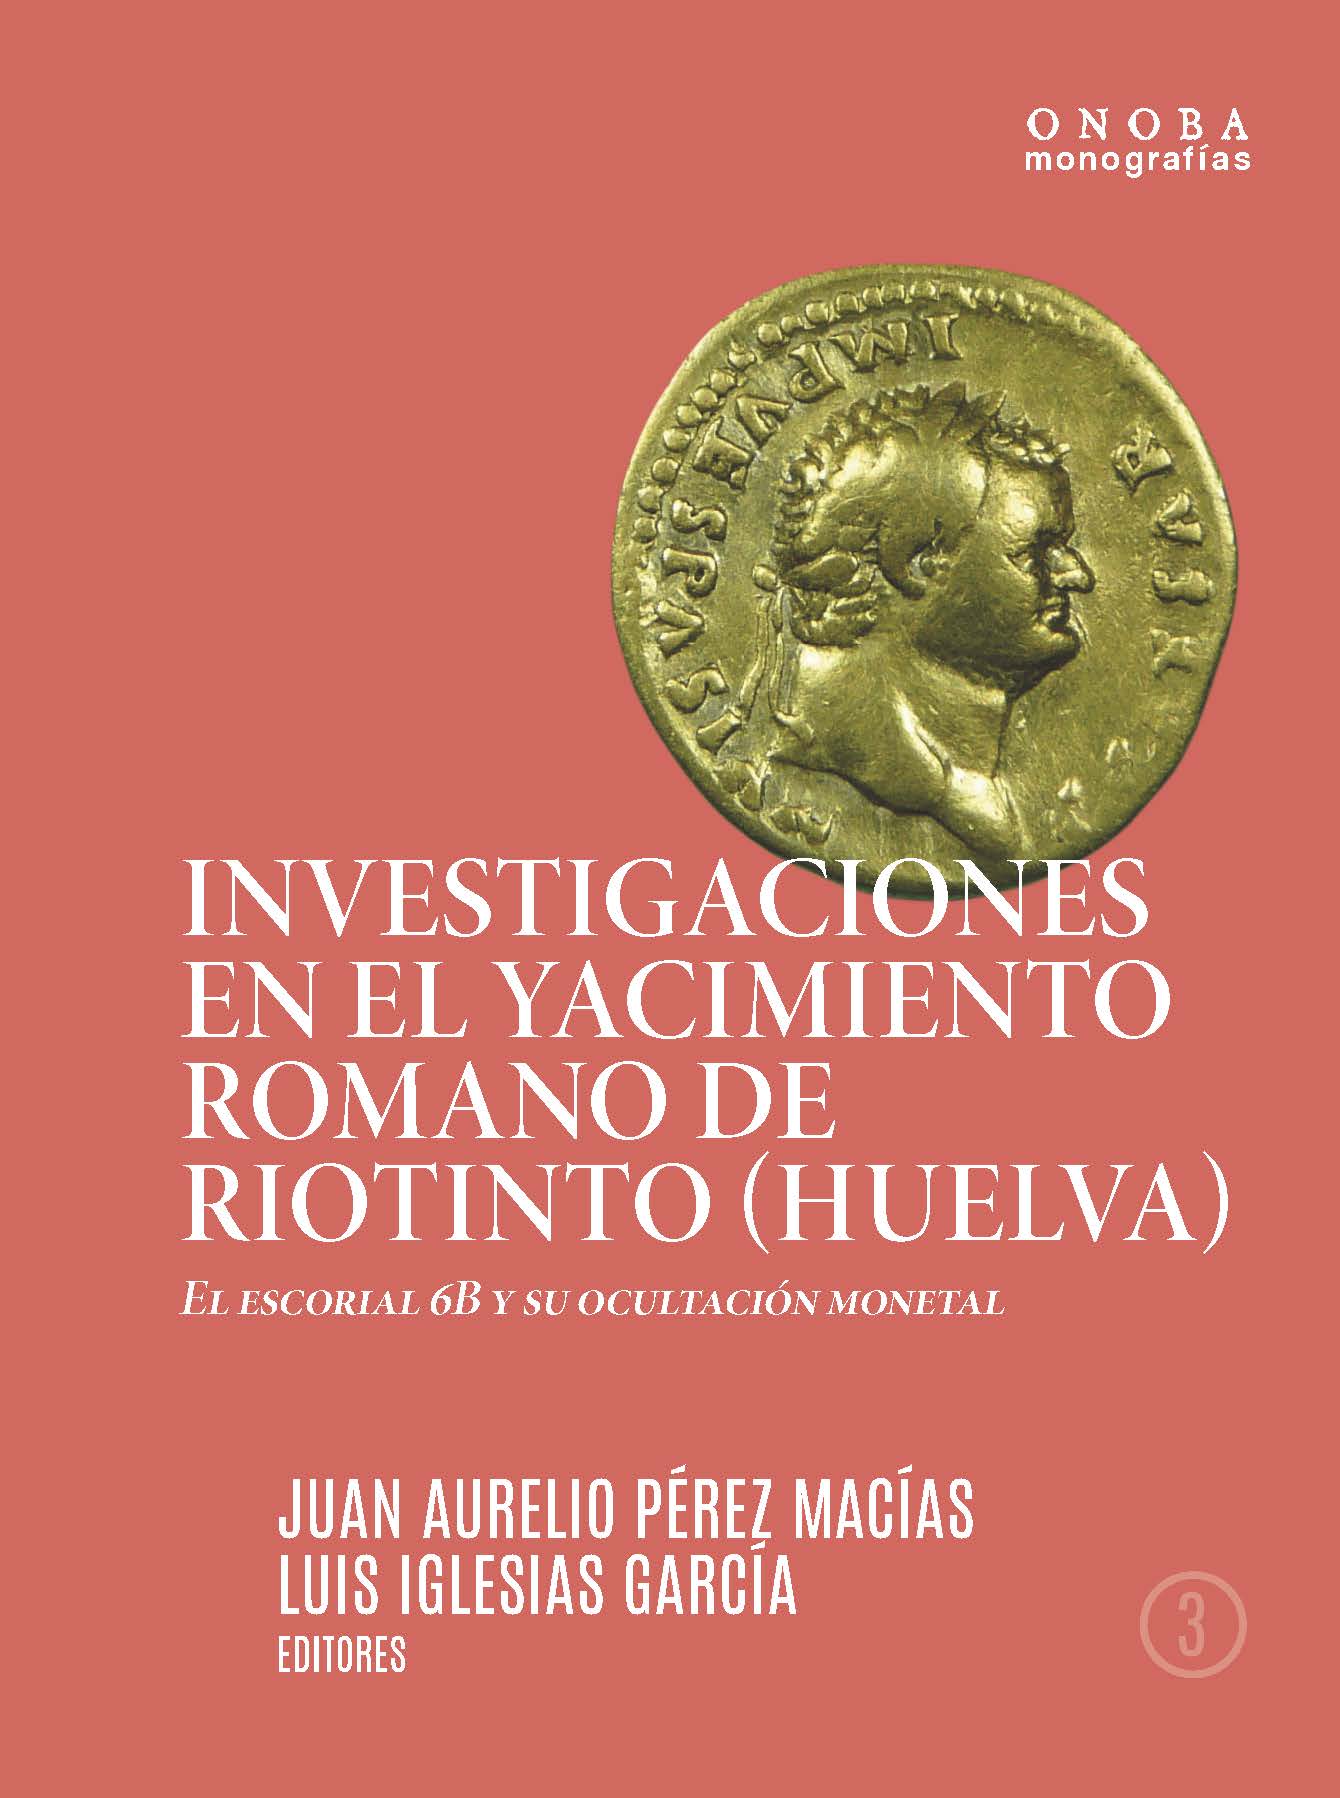 Imagen de portada del libro Investigaciones en el yacimiento romano de Riotinto (Huelva)